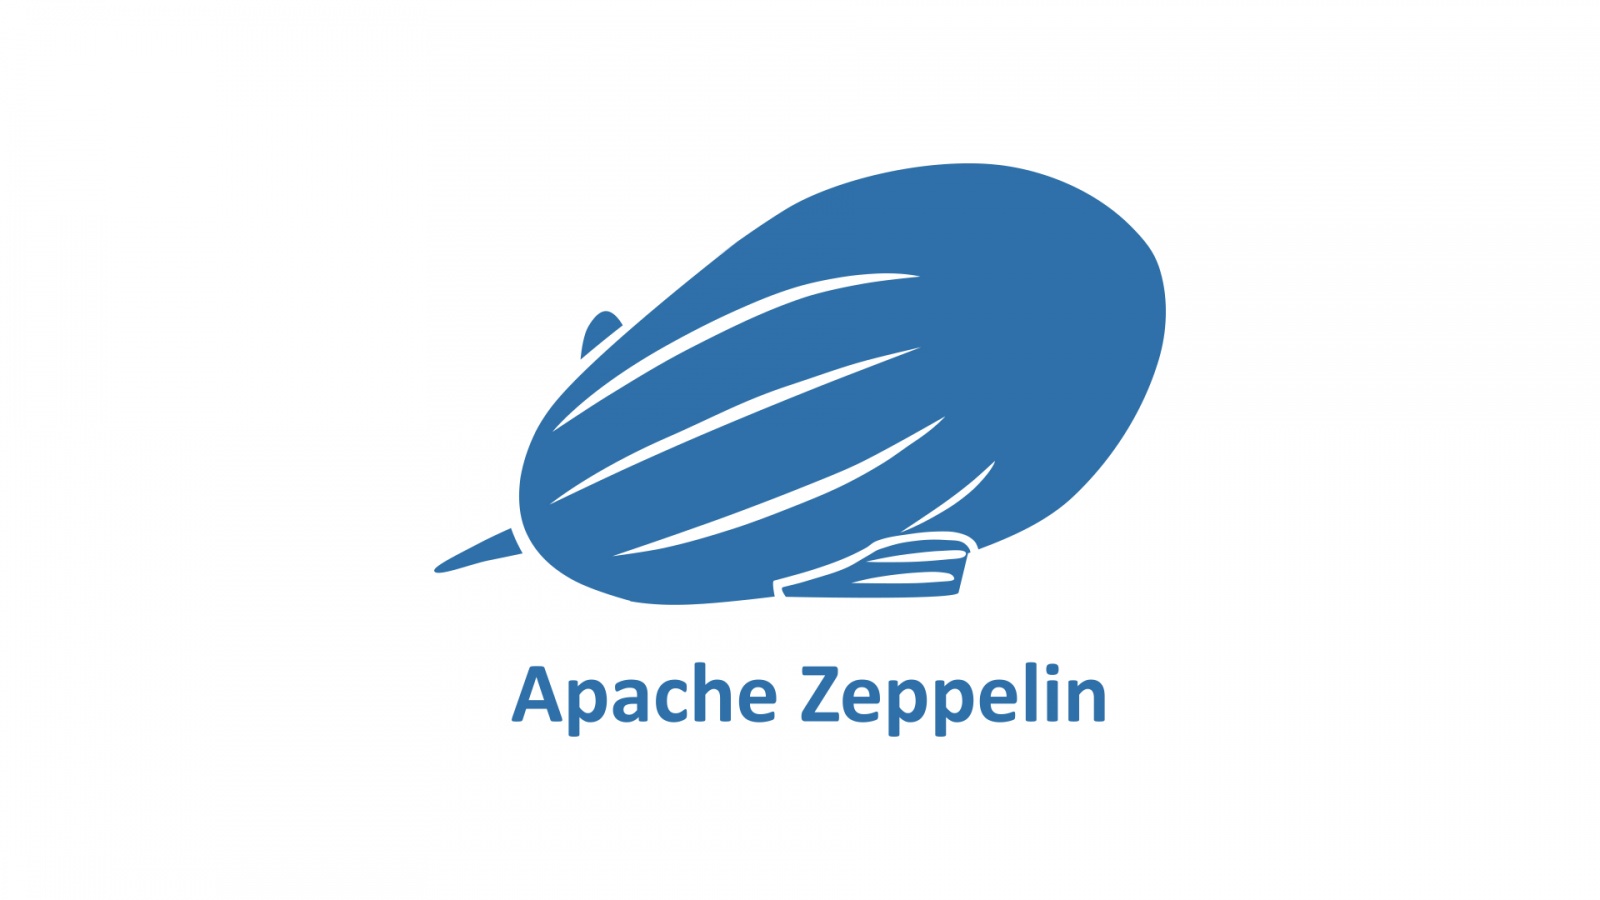 Допинг для аналитики: почему стоит обратить внимание на Apache Zeppelin - 1